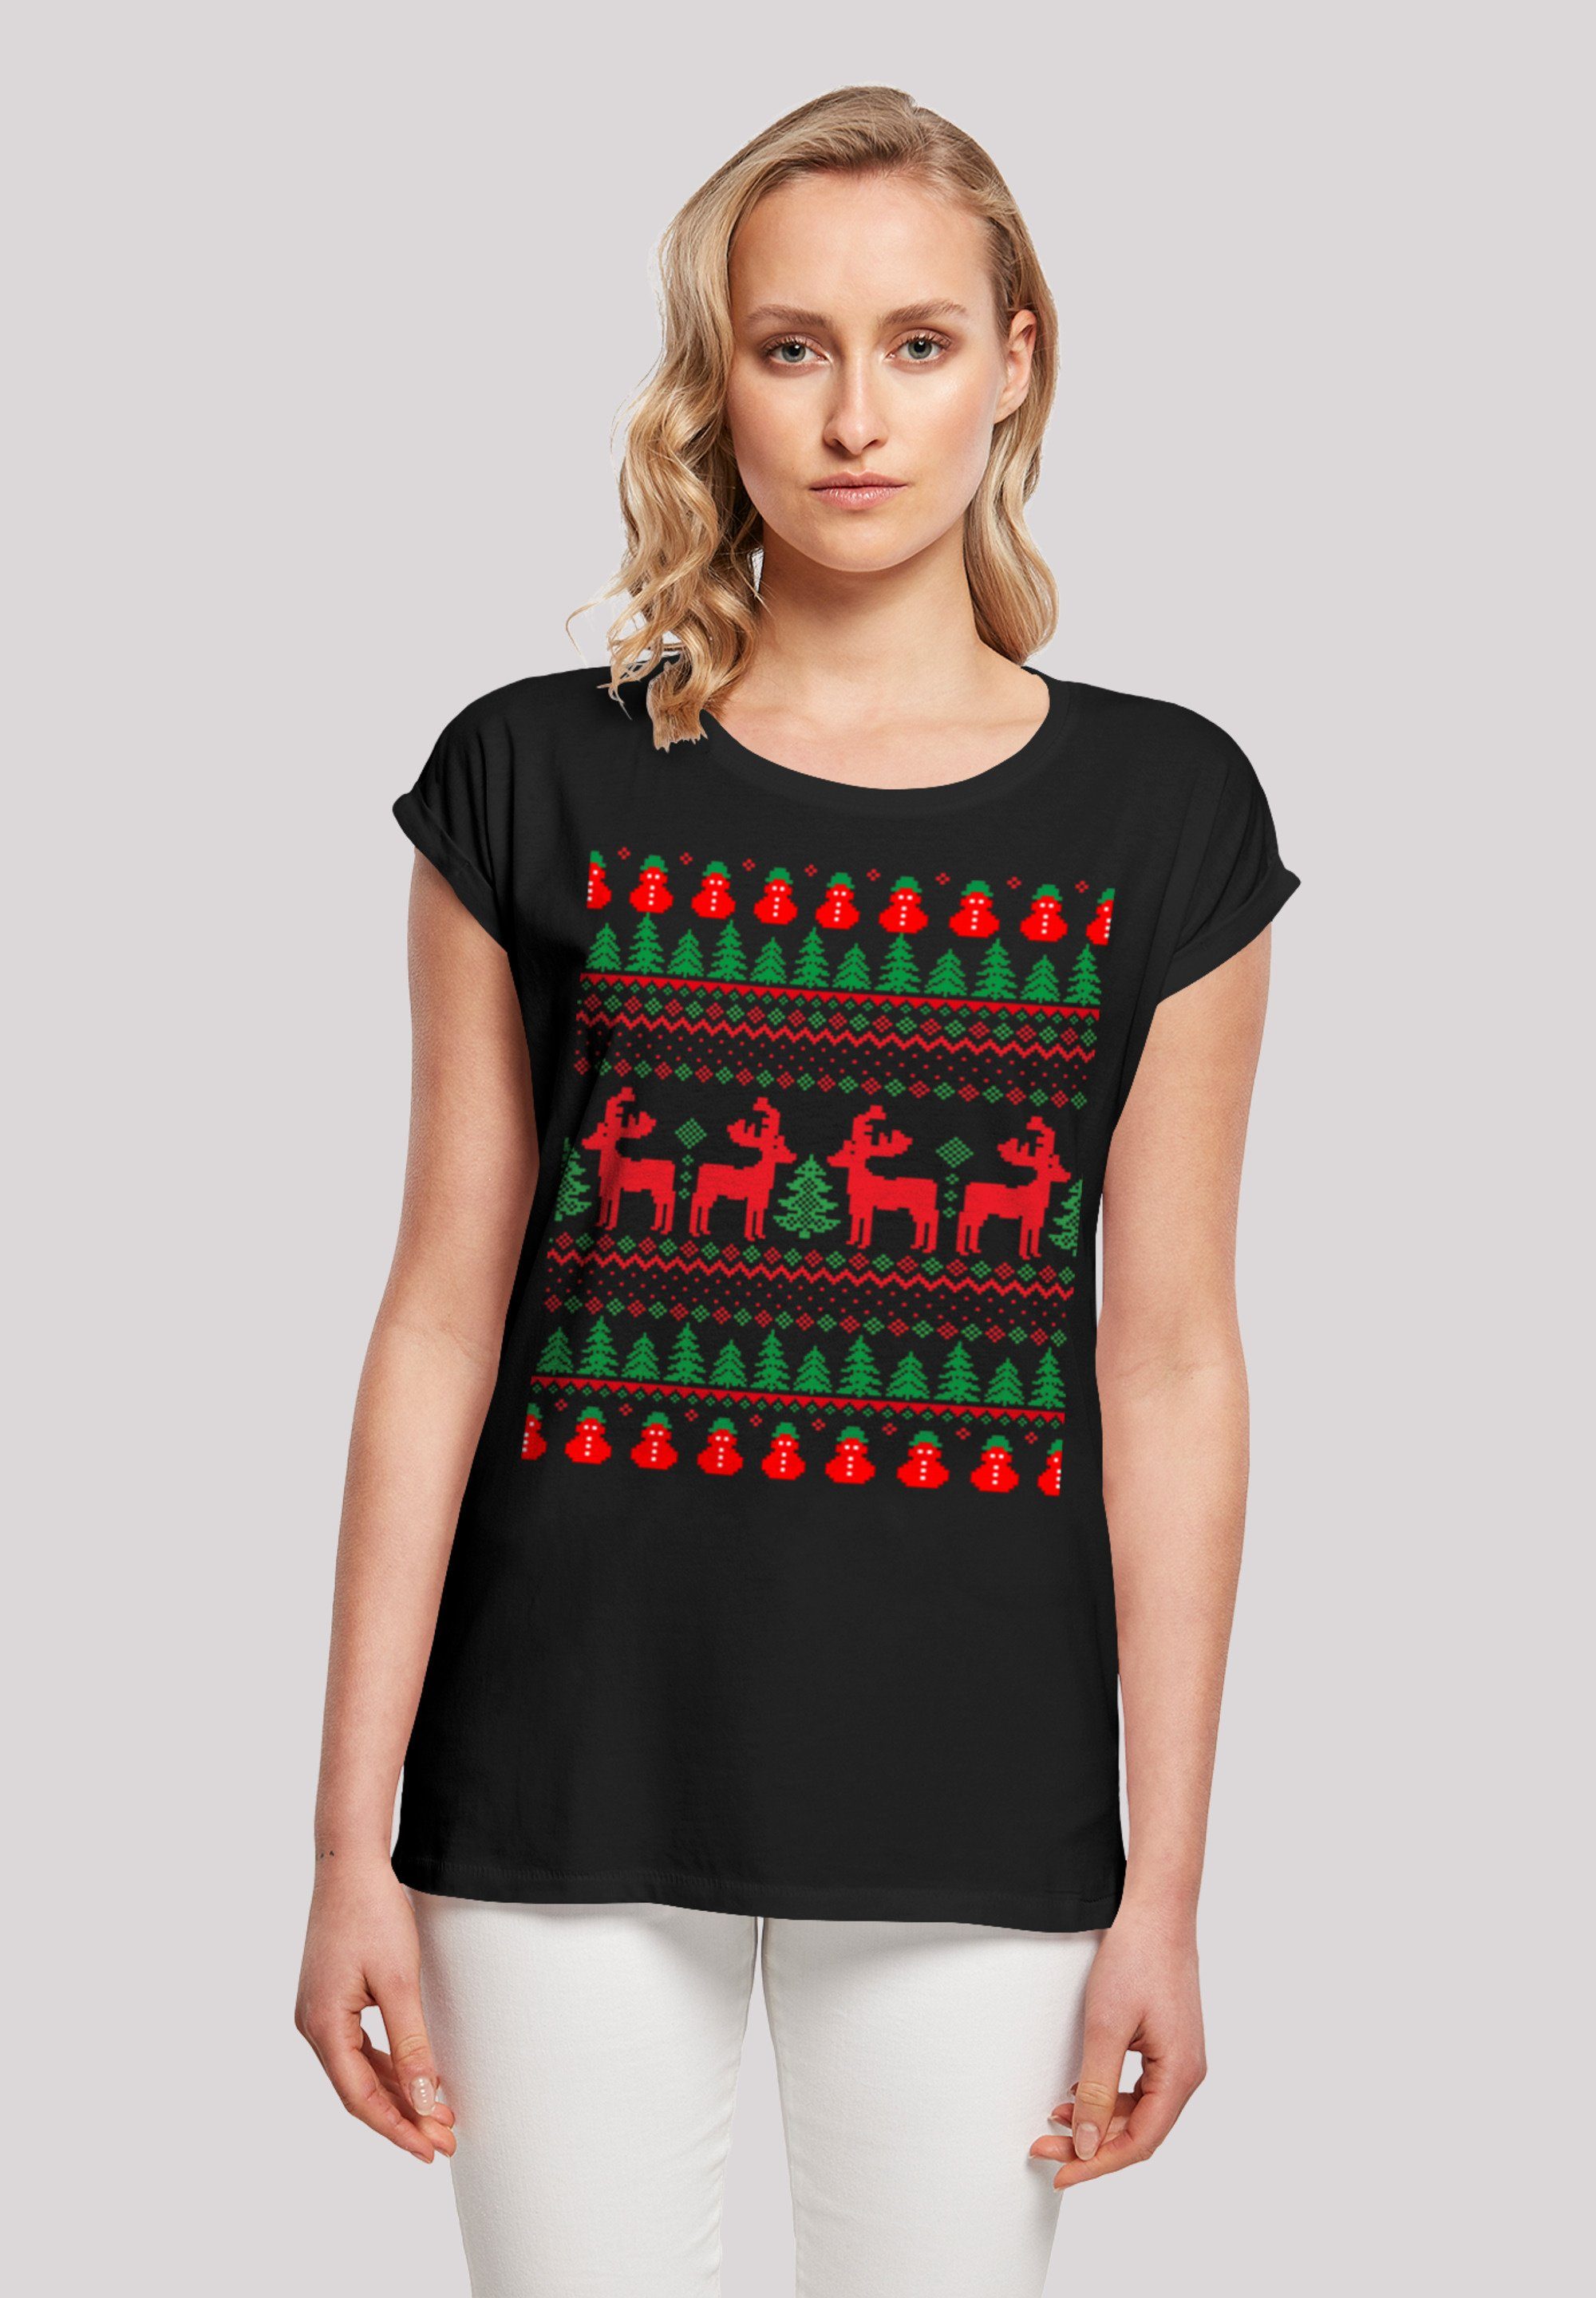 Basic-Piece T-Shirt jeden Reindeers für F4NT4STIC Christmas Tag Weihnachten Print, Lässiges Muster